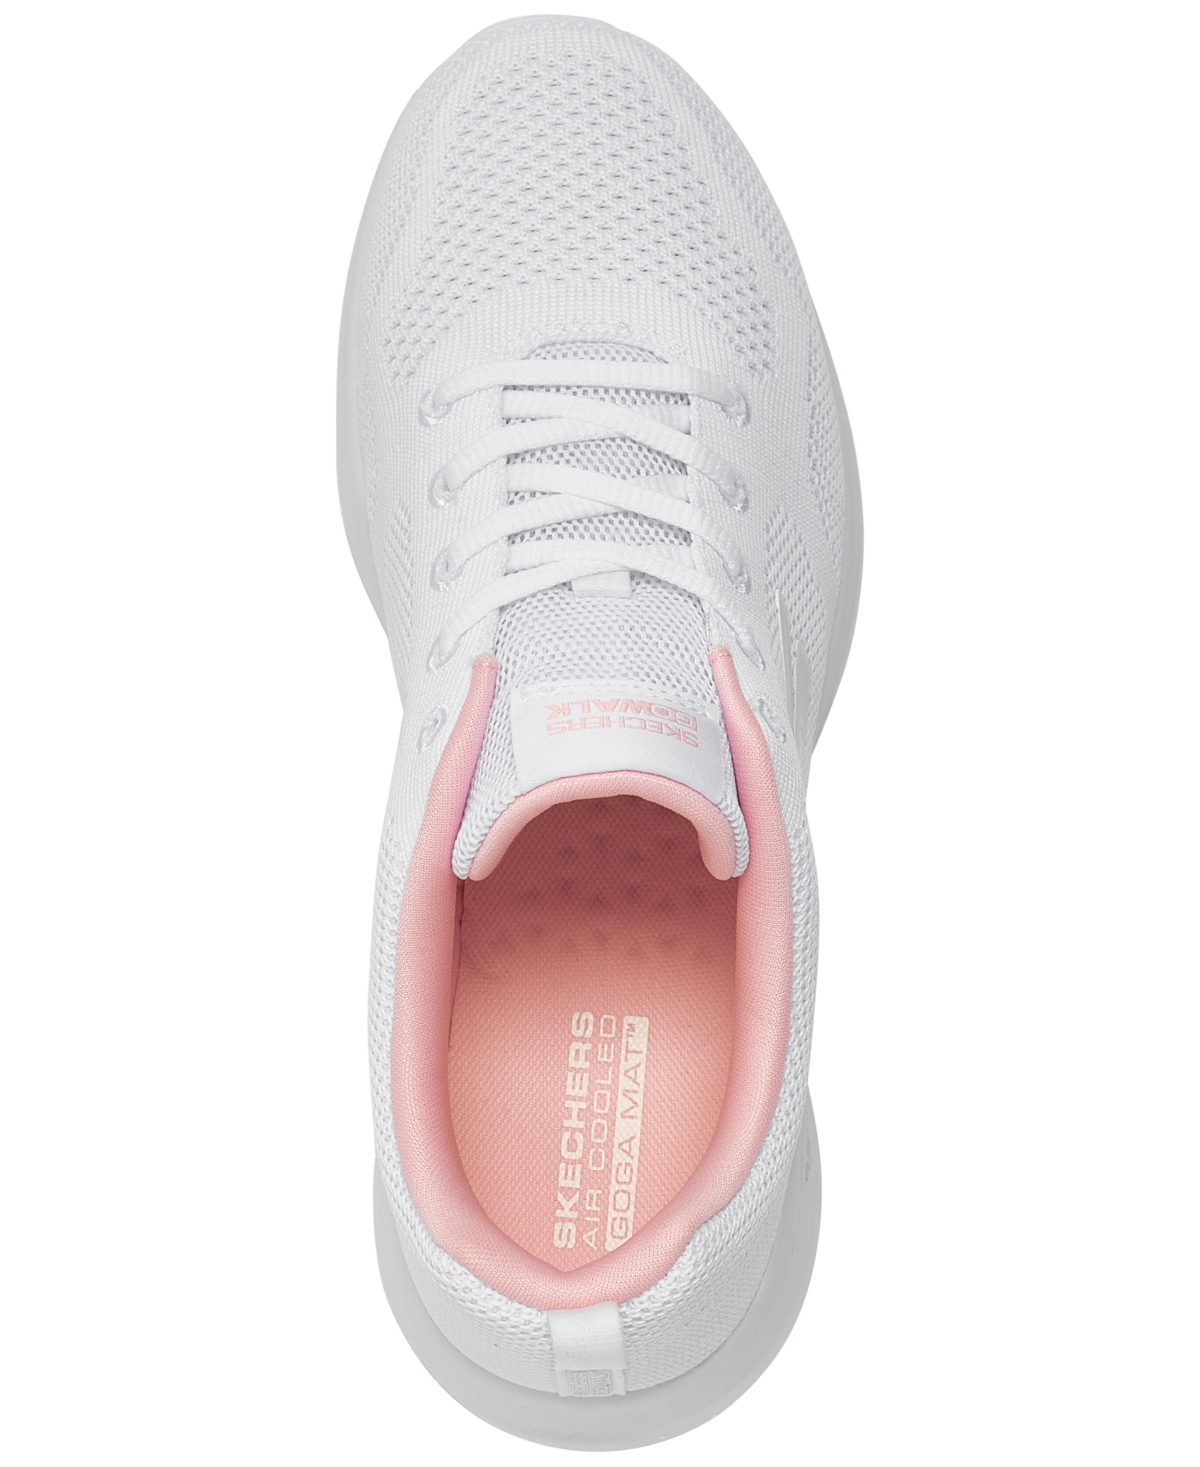 Shop Skechers Women's Go Walk Joy Lace Walking Sneakers From Finish Line In White,pink